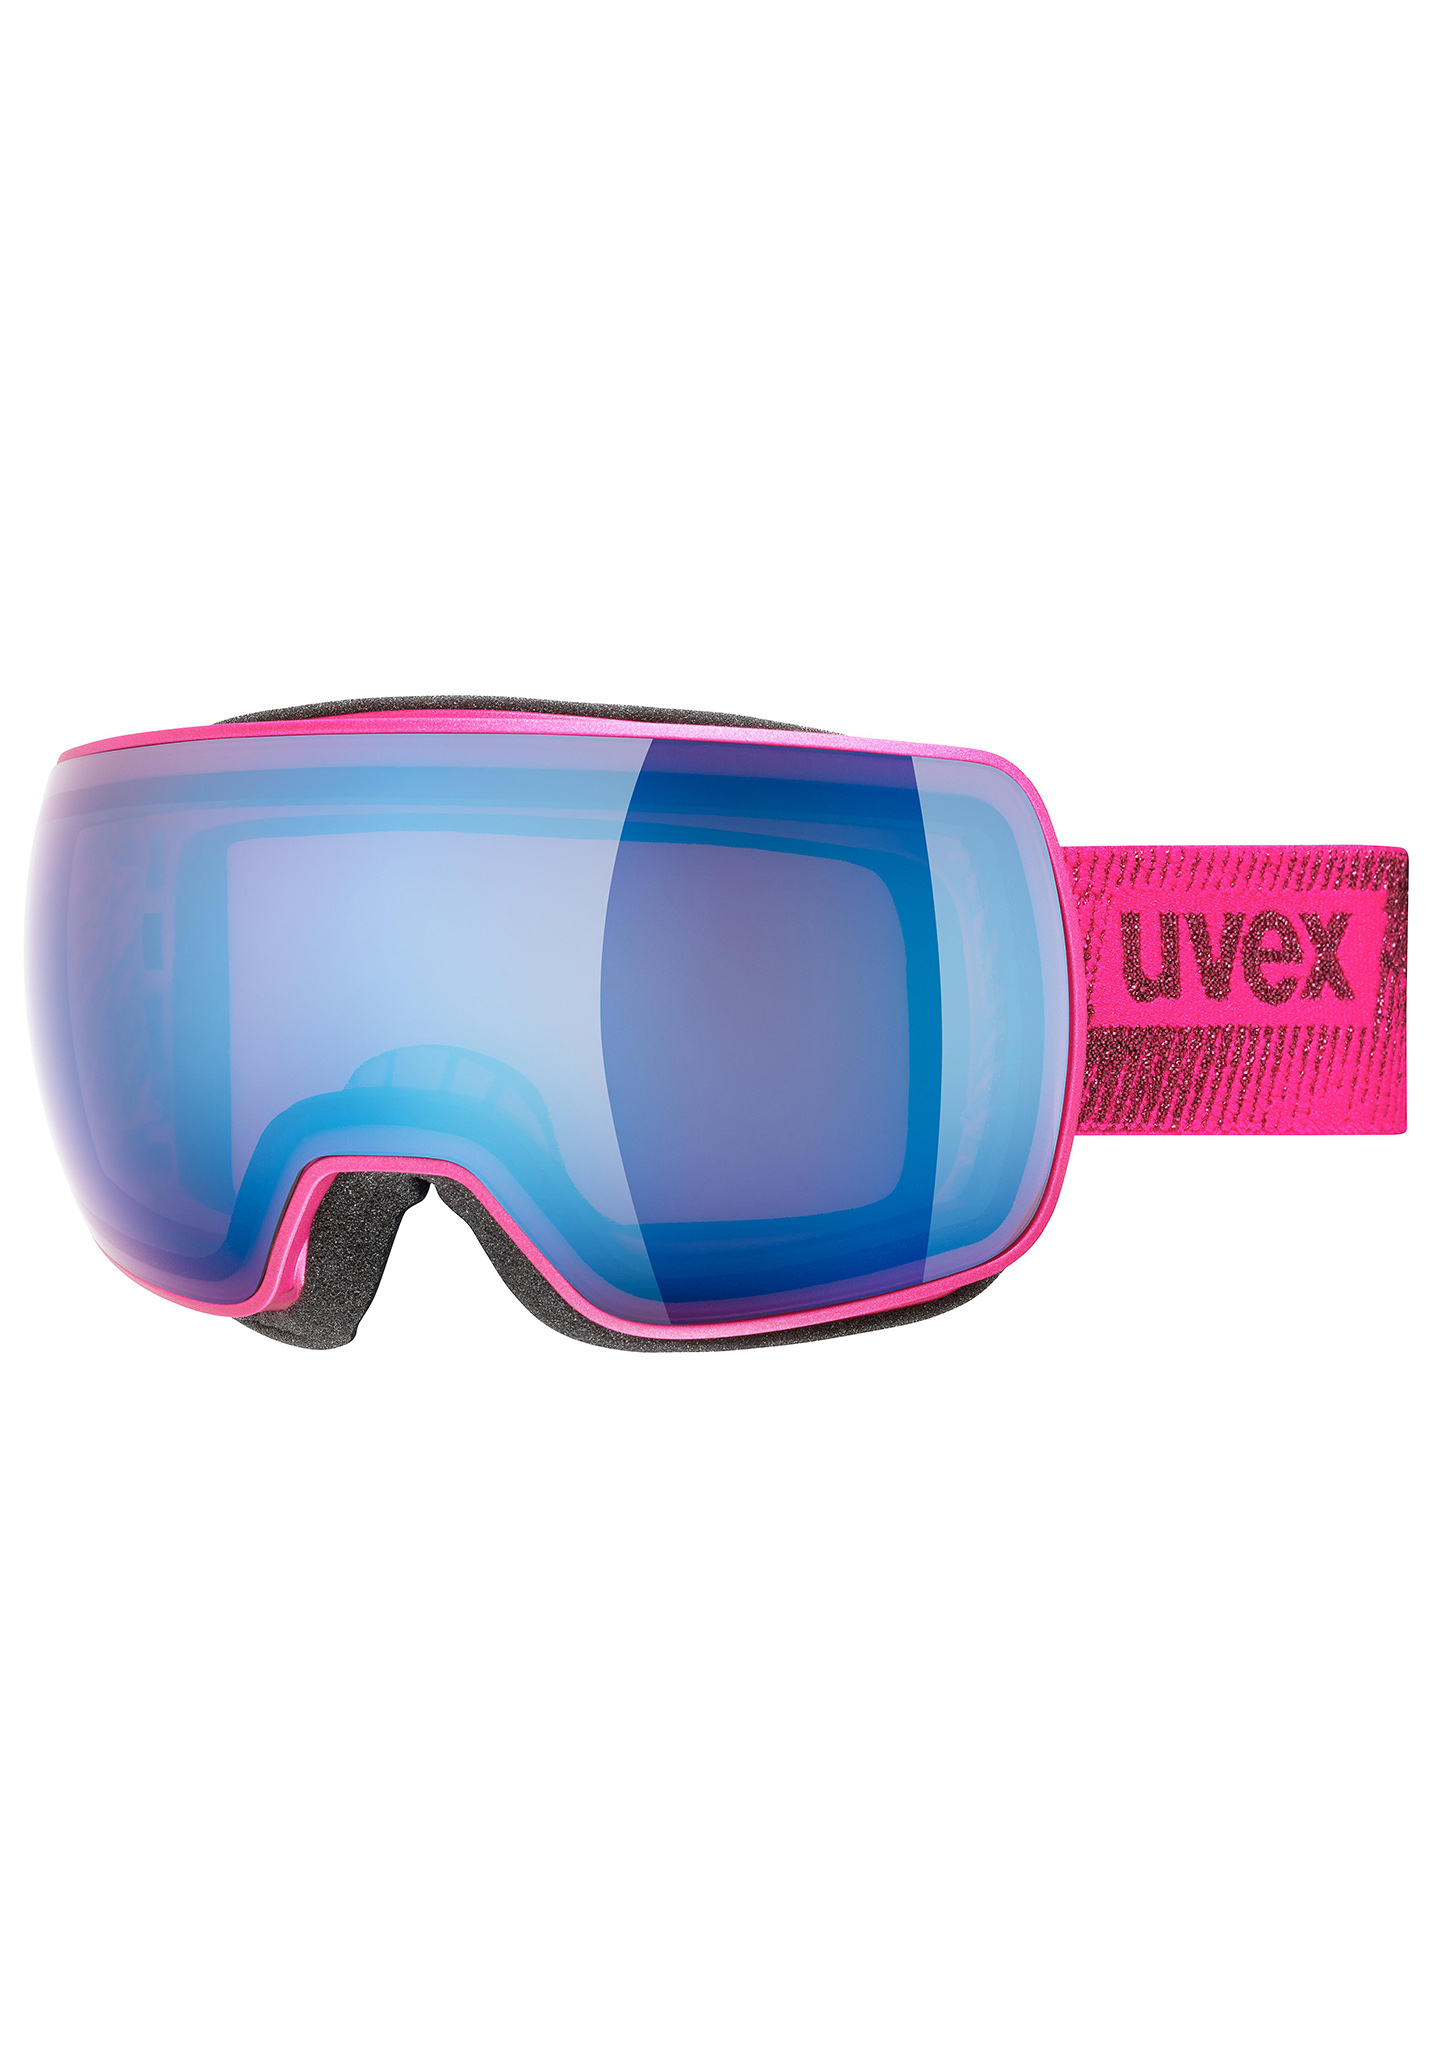 Uvex Compact FM Snowboardbrillen rosa matt/spiegel blau One Size